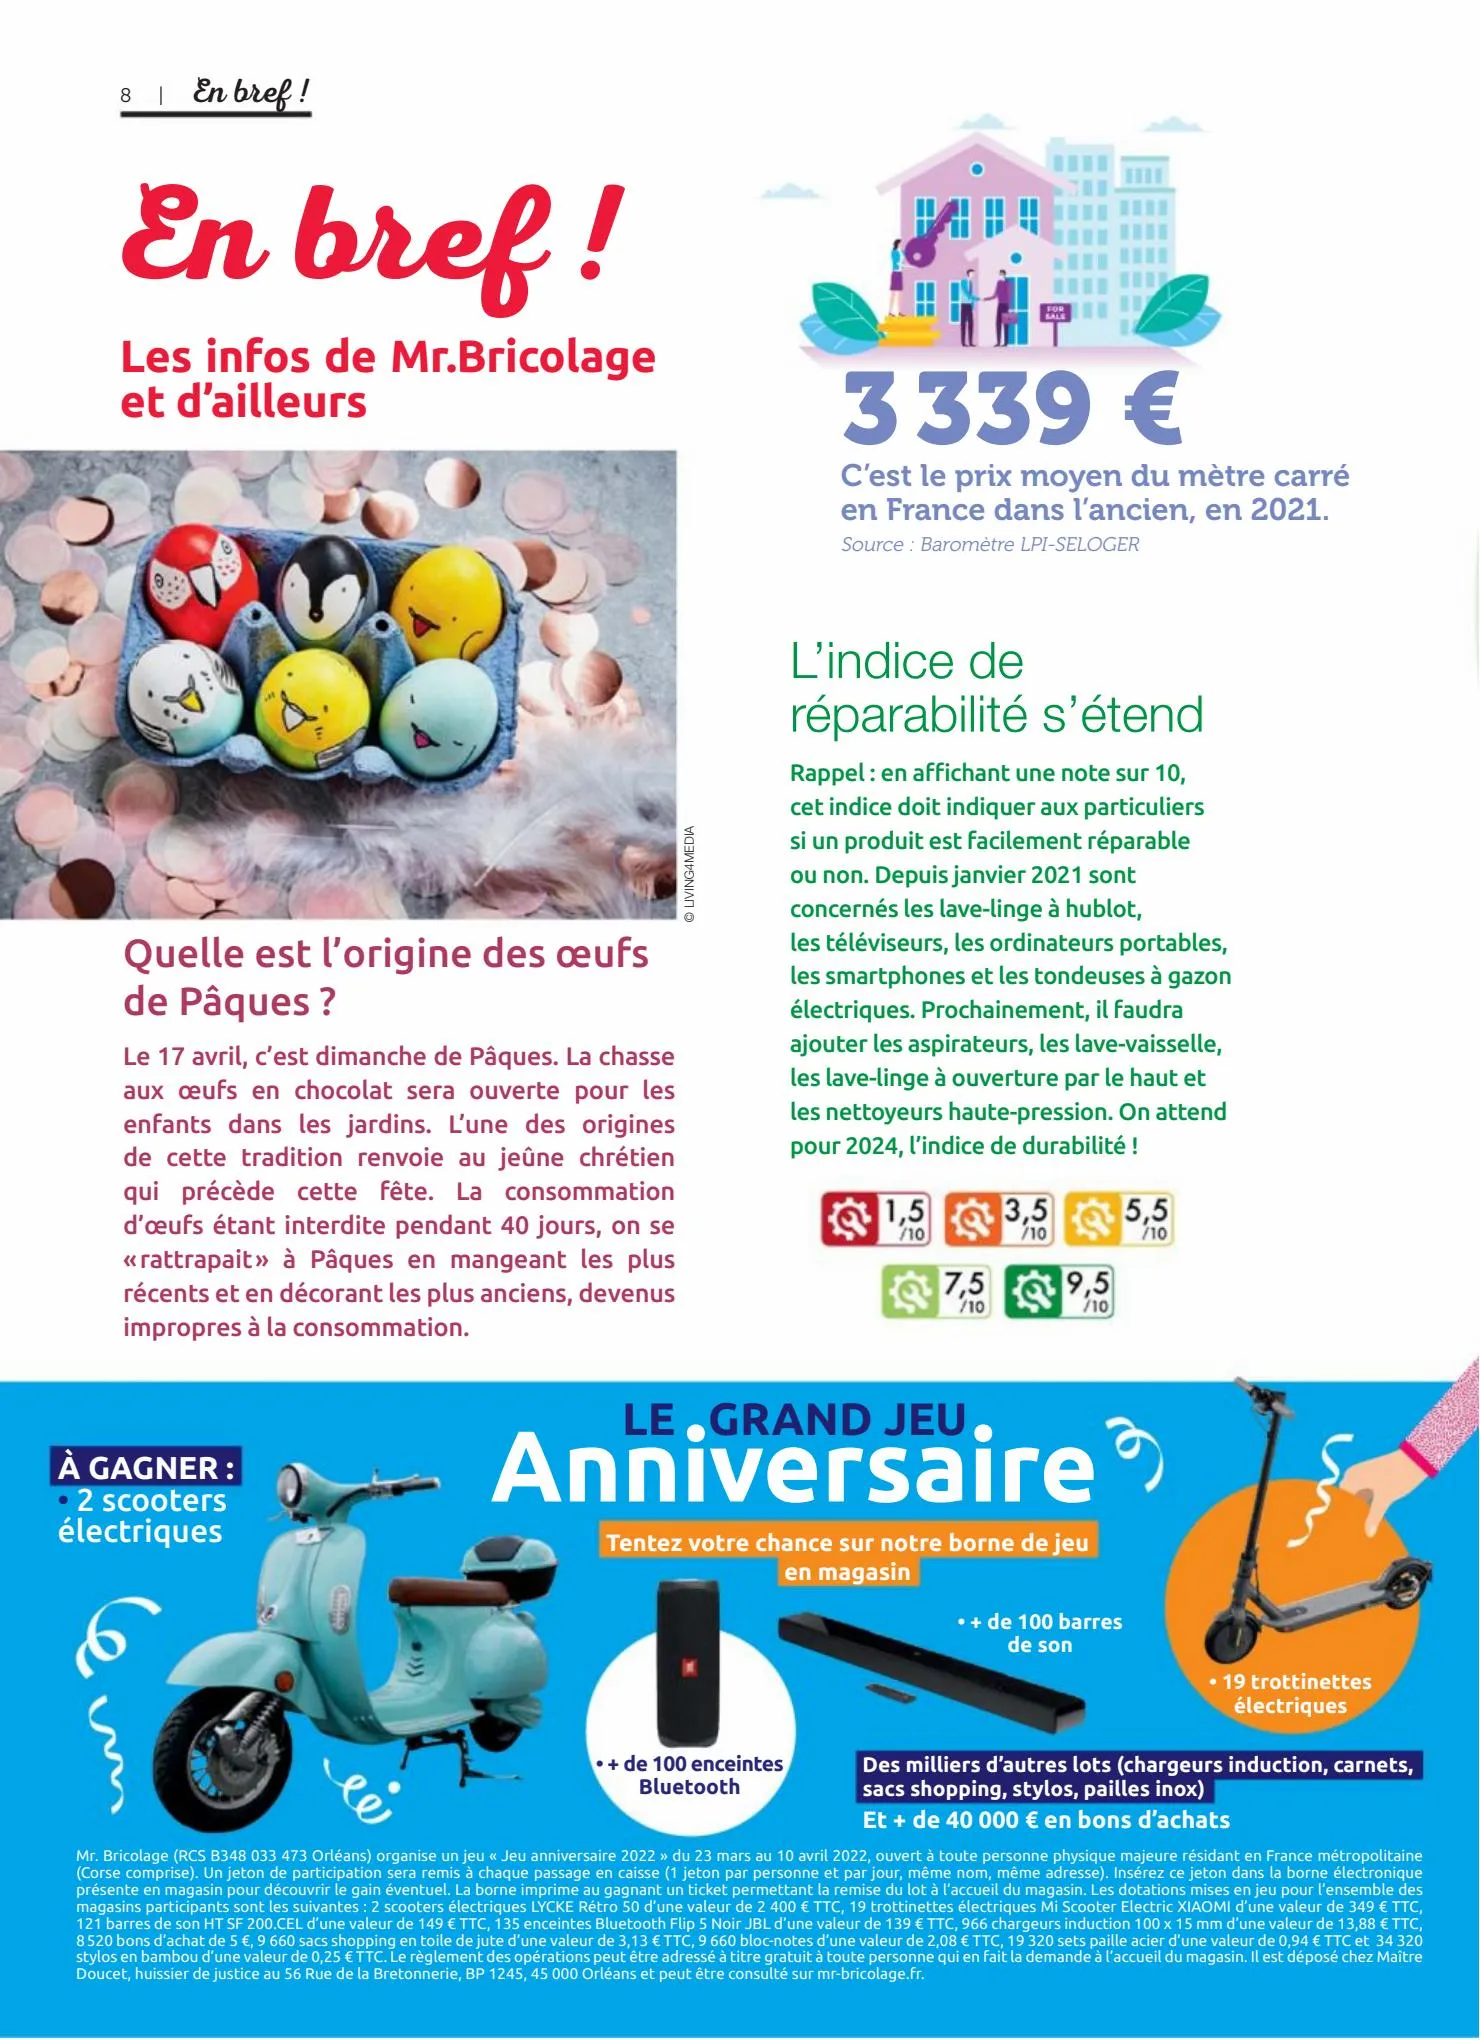 Catalogue Entre Voisins Magazine, page 00008